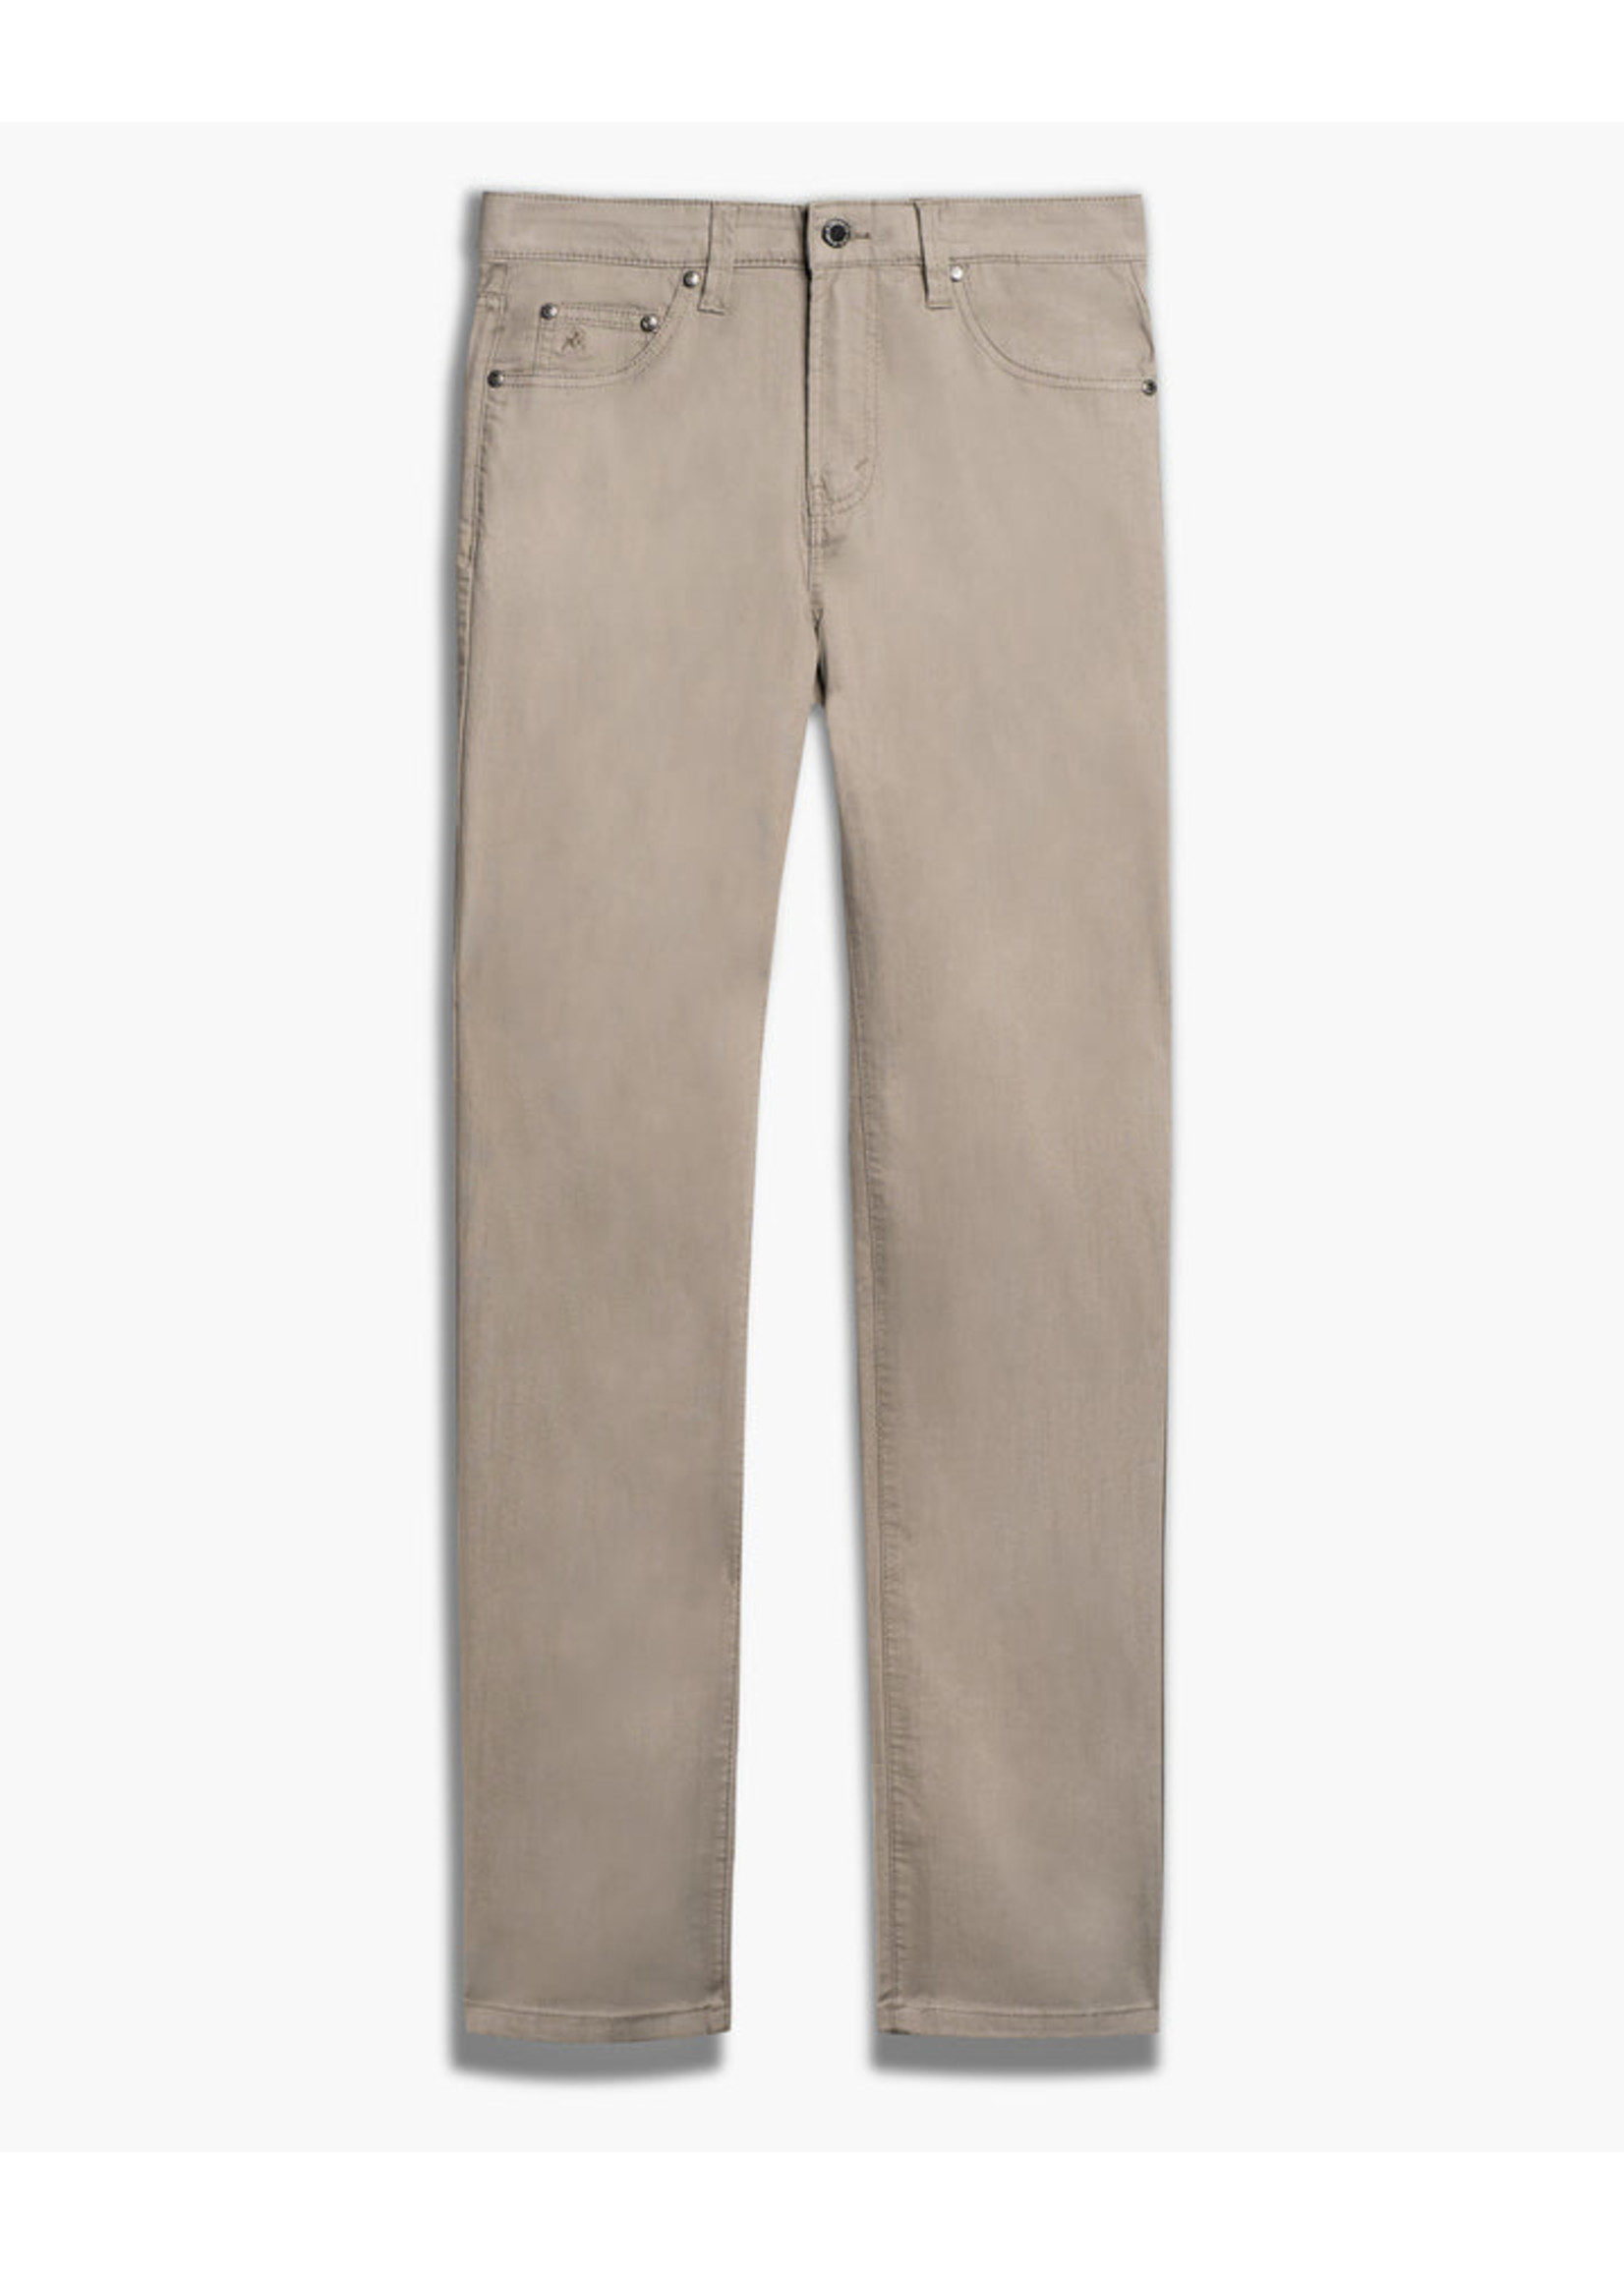 LOIS JEANS & JACKETS Pantalon 5 poches en coton extensible-Homme